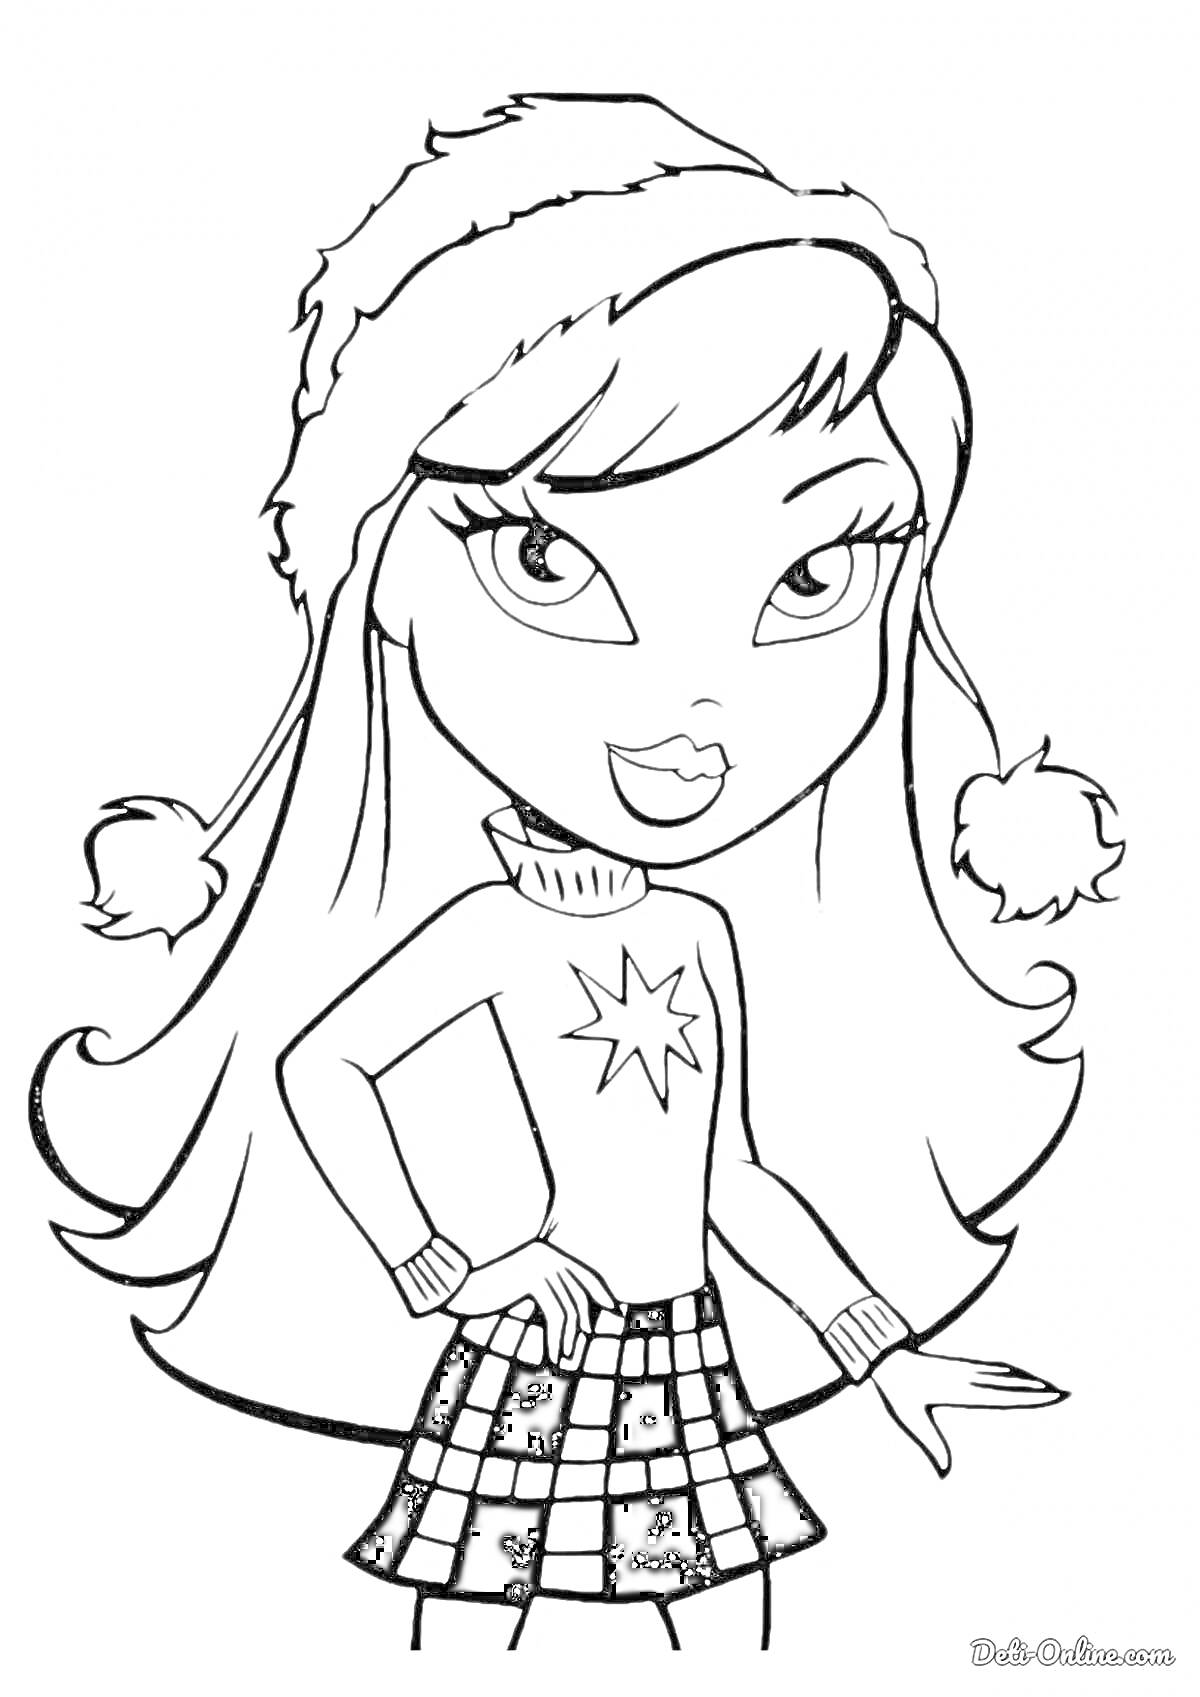 Раскраска Девочка Братц в зимней шапке и свитере со звездой, в клетчатой юбке